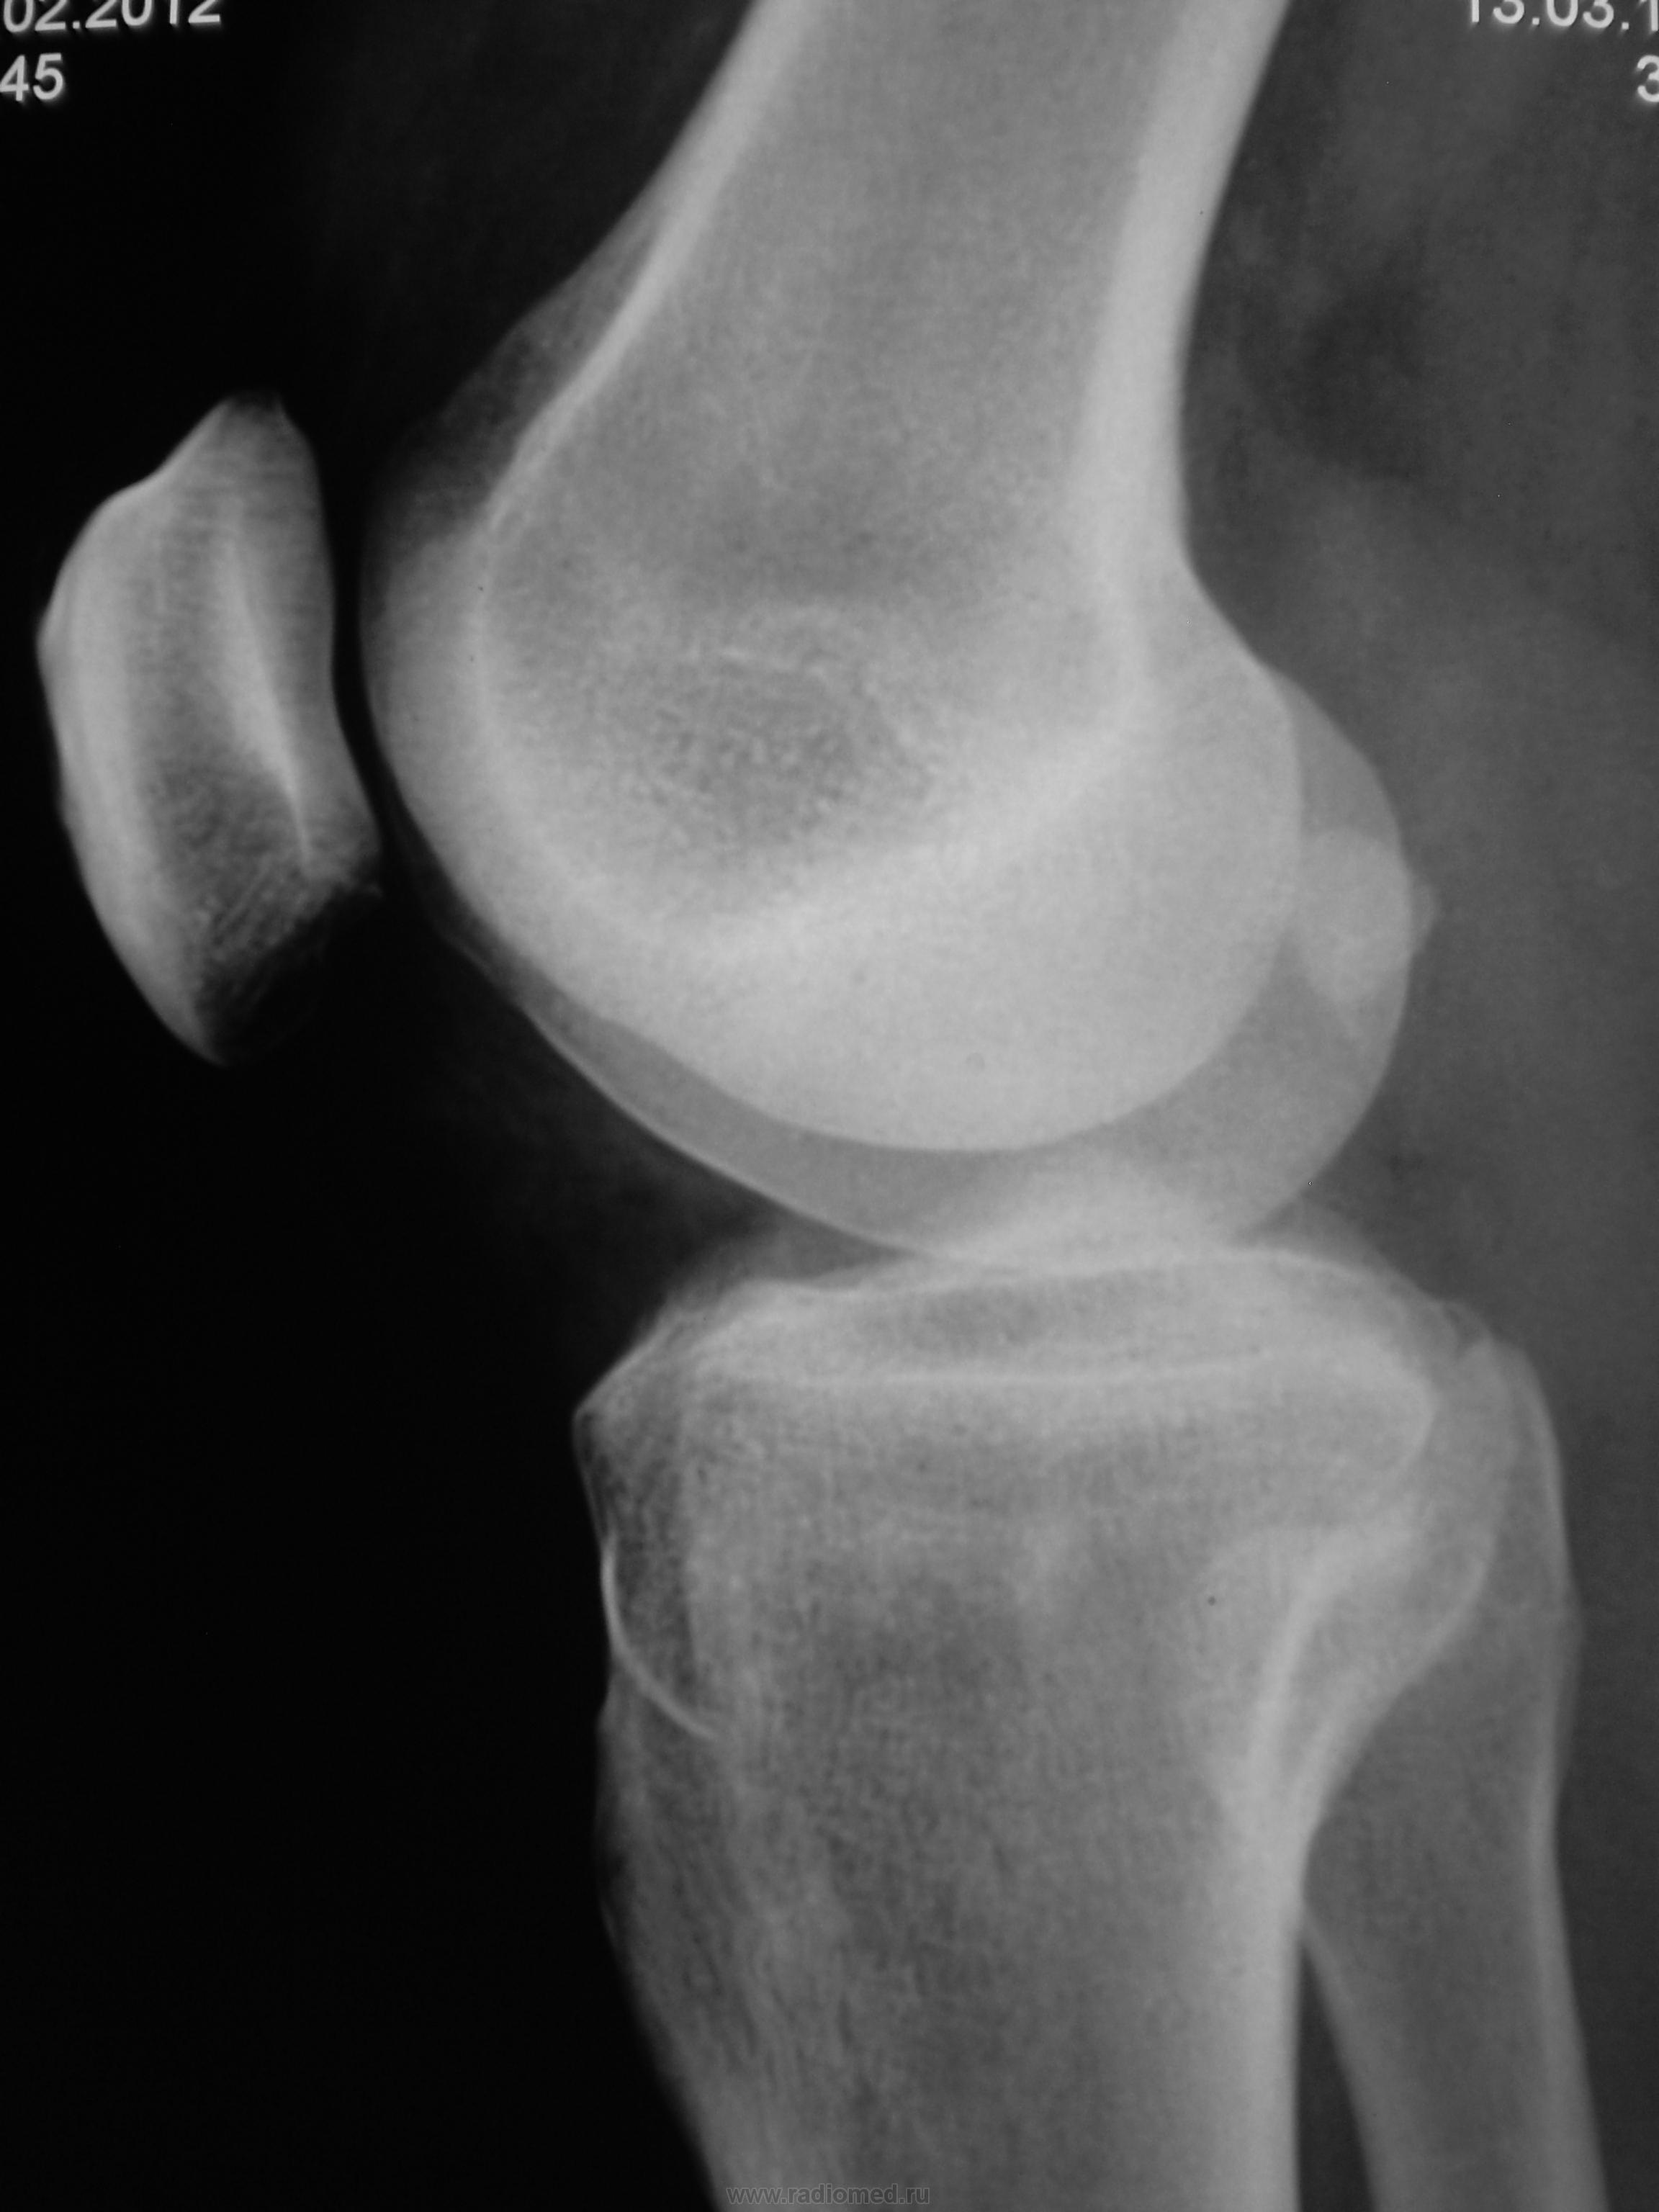 Рентген колена. Пателлофеморальный артроз коленного сустава рентген. Артроз пателлофеморального сочленения коленного сустава рентген. Рентгенограмма коленного сустава в норме. Артроз надколенника рентген.